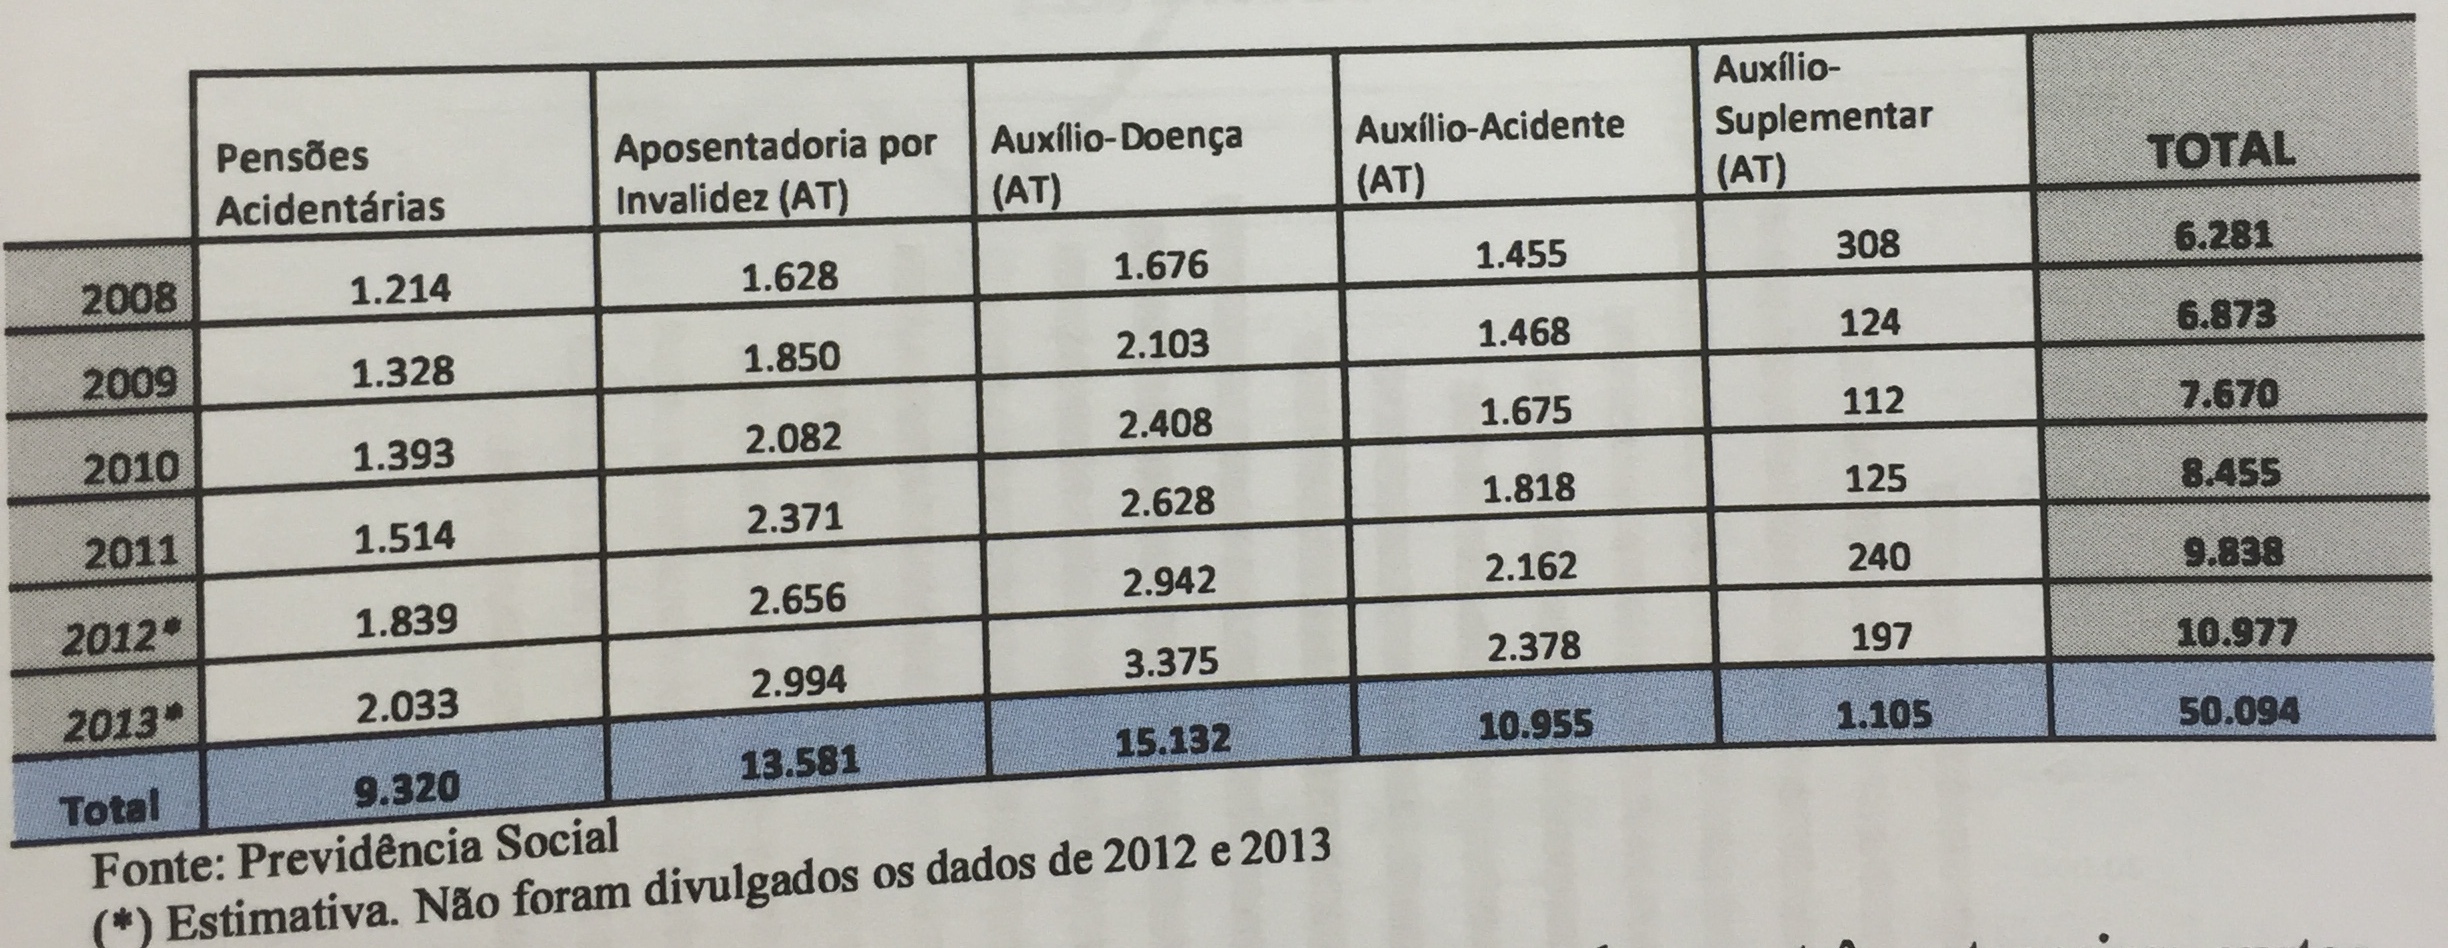 Despesas do INSS com o pagamento de benefícios por acidente do trabalho, Brasil, 2008 a 2013 (em milhões de reais)